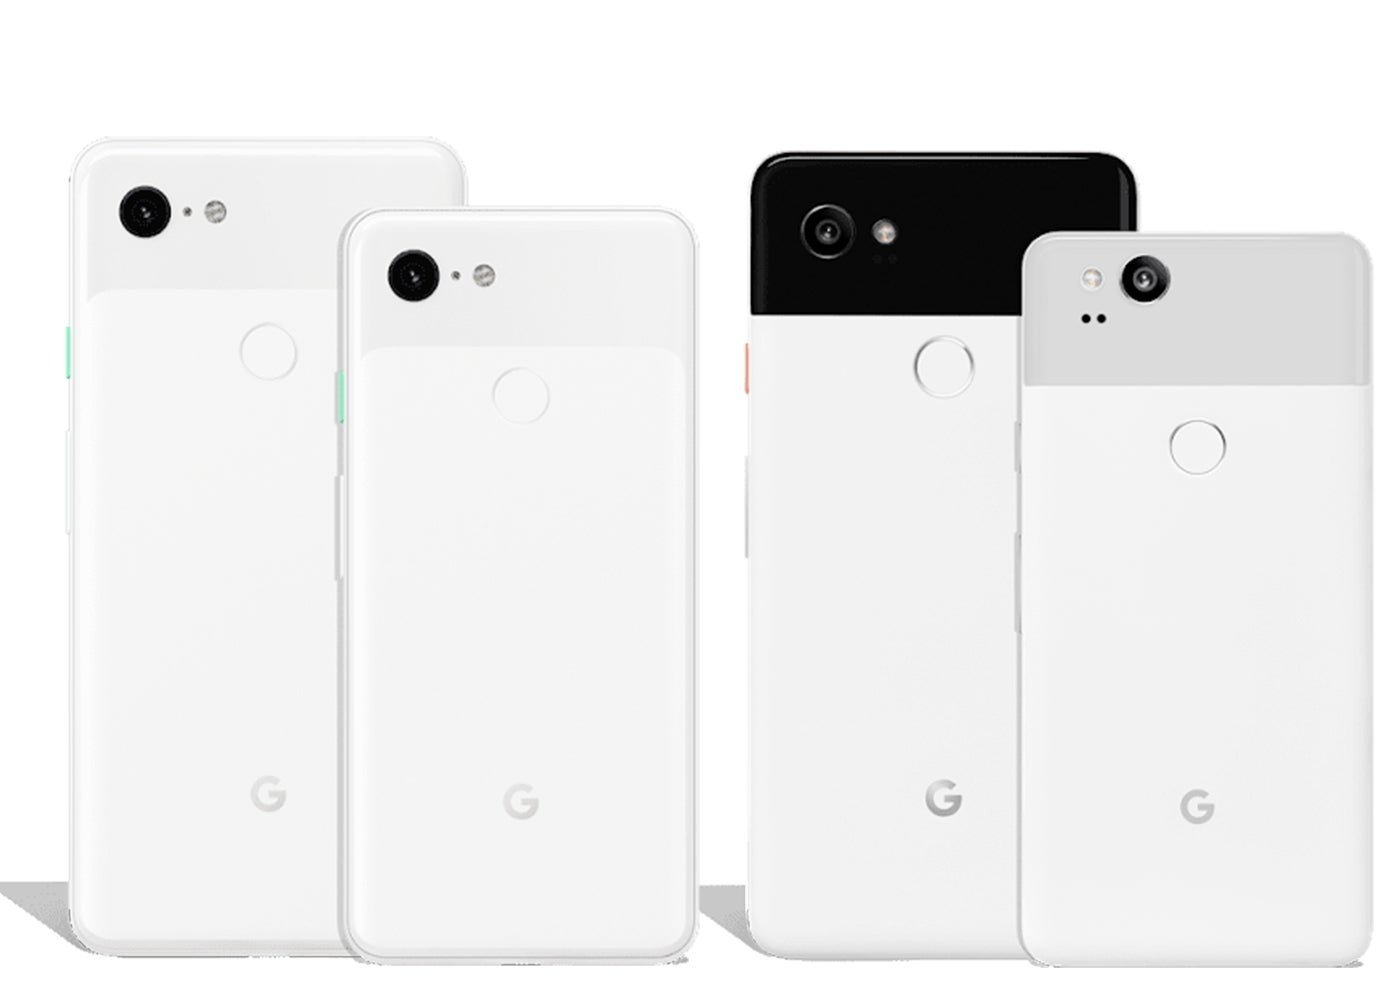 Google Pixel 3 y Pixel 3 XL vs Google Pixel 2 y Pixel 2 XL, ¿qué ha cambiado?